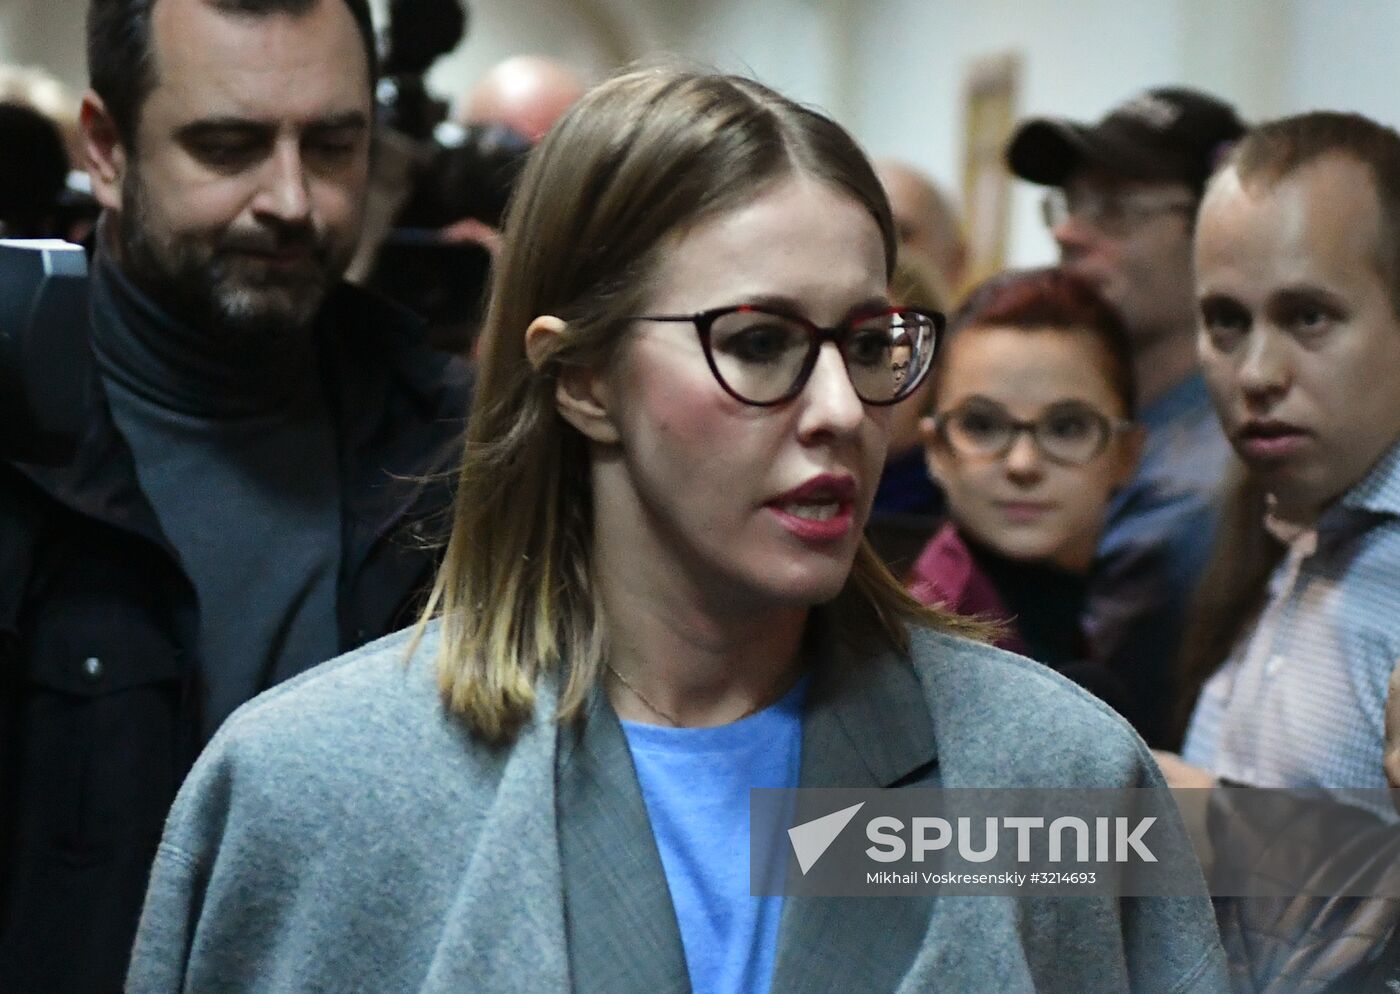 Court hears investigators' motion on extending arrest of film director Kirill Serebrennikov